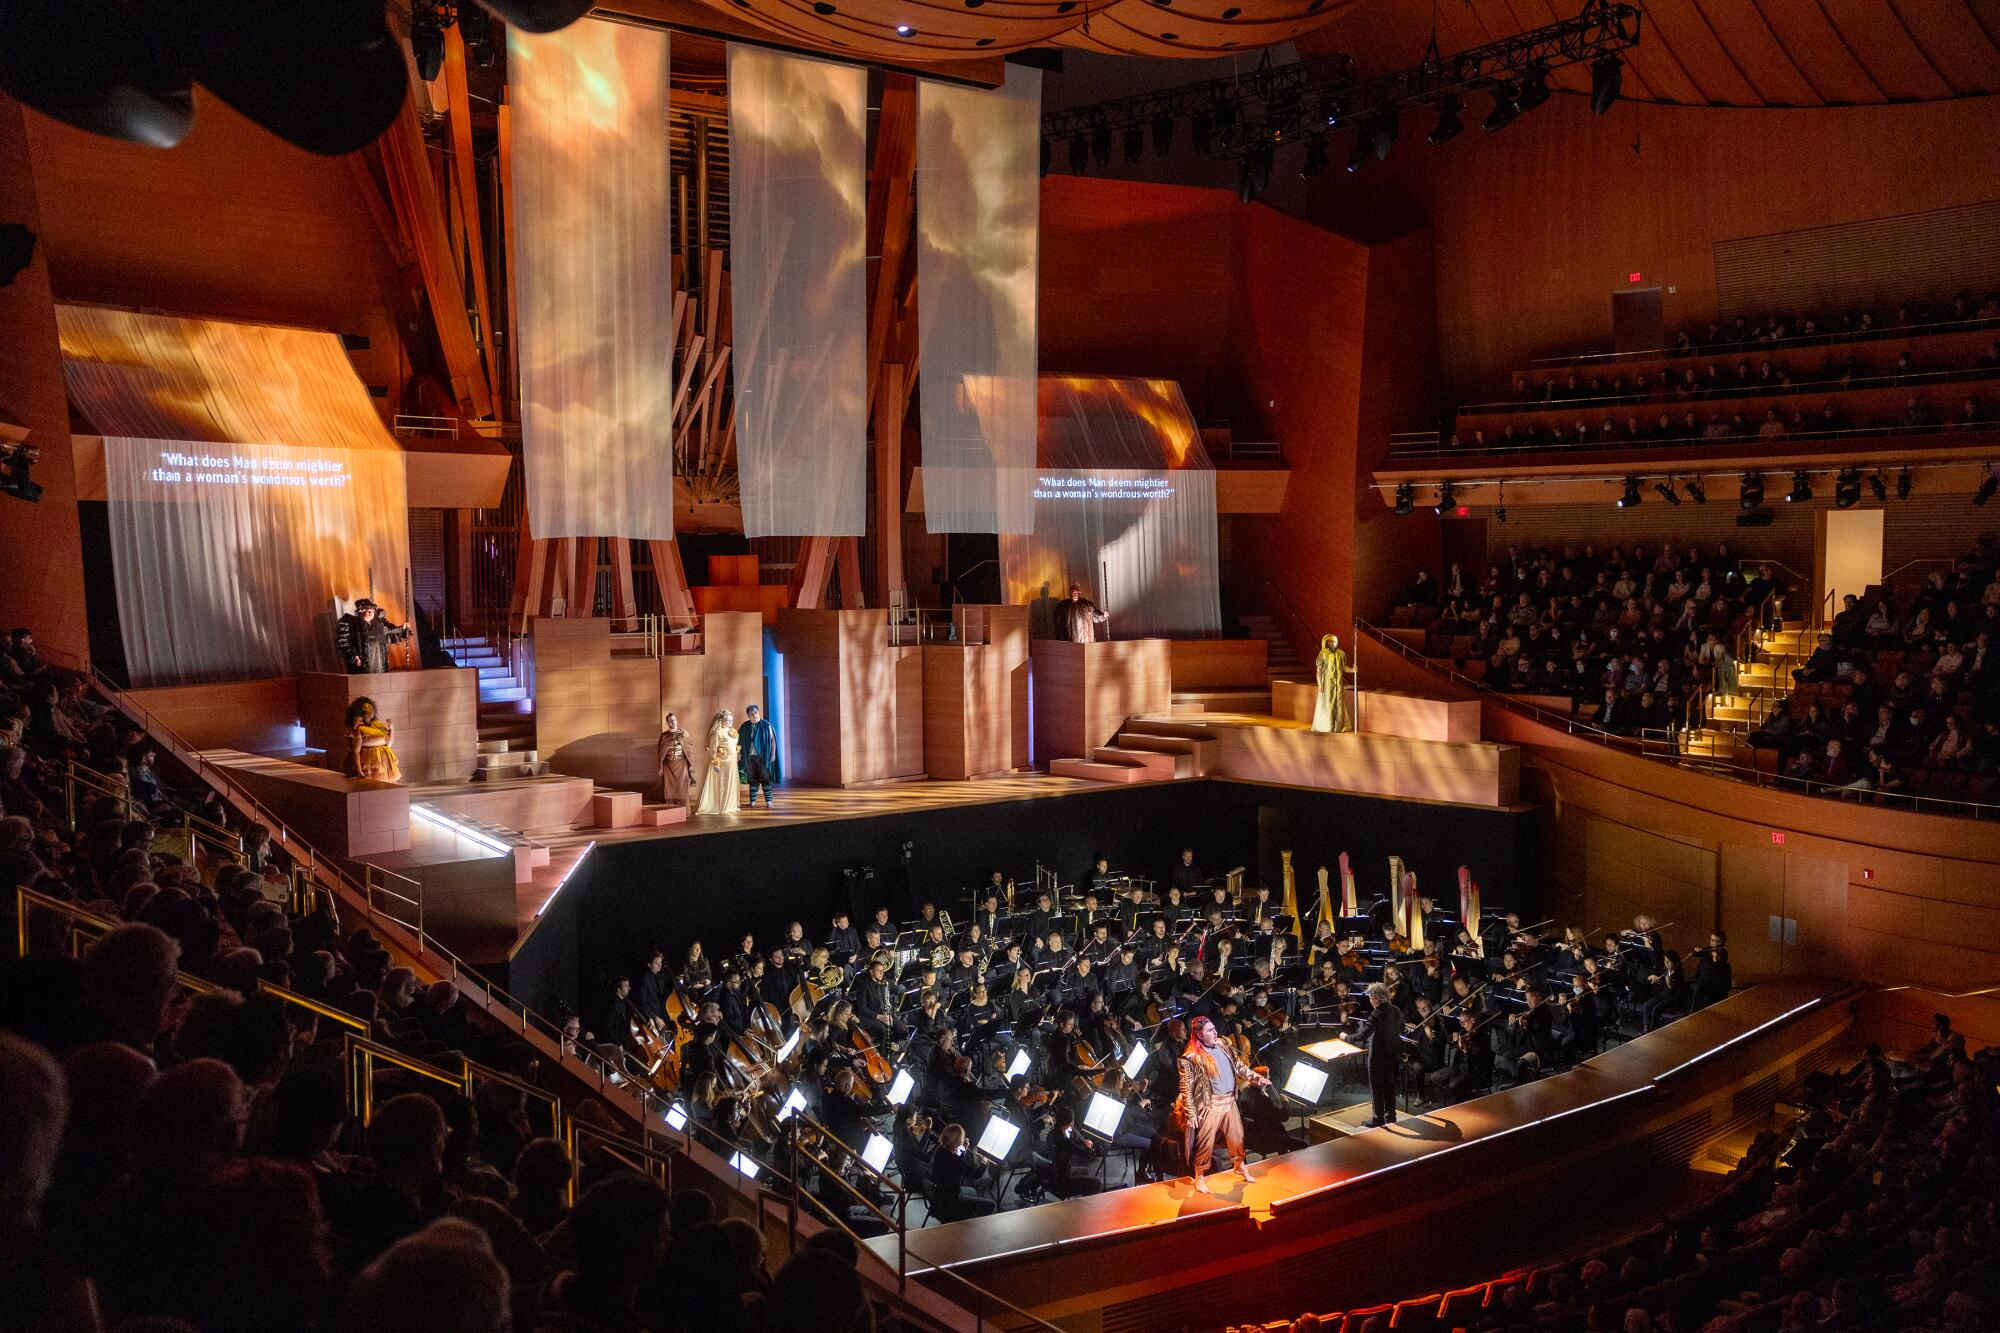 古斯塔沃·杜达梅尔 (Gustavo Dudamel) 在瓦格纳 (Wagner) 的一个简陋的管弦乐池中指挥洛杉矶爱乐乐团 